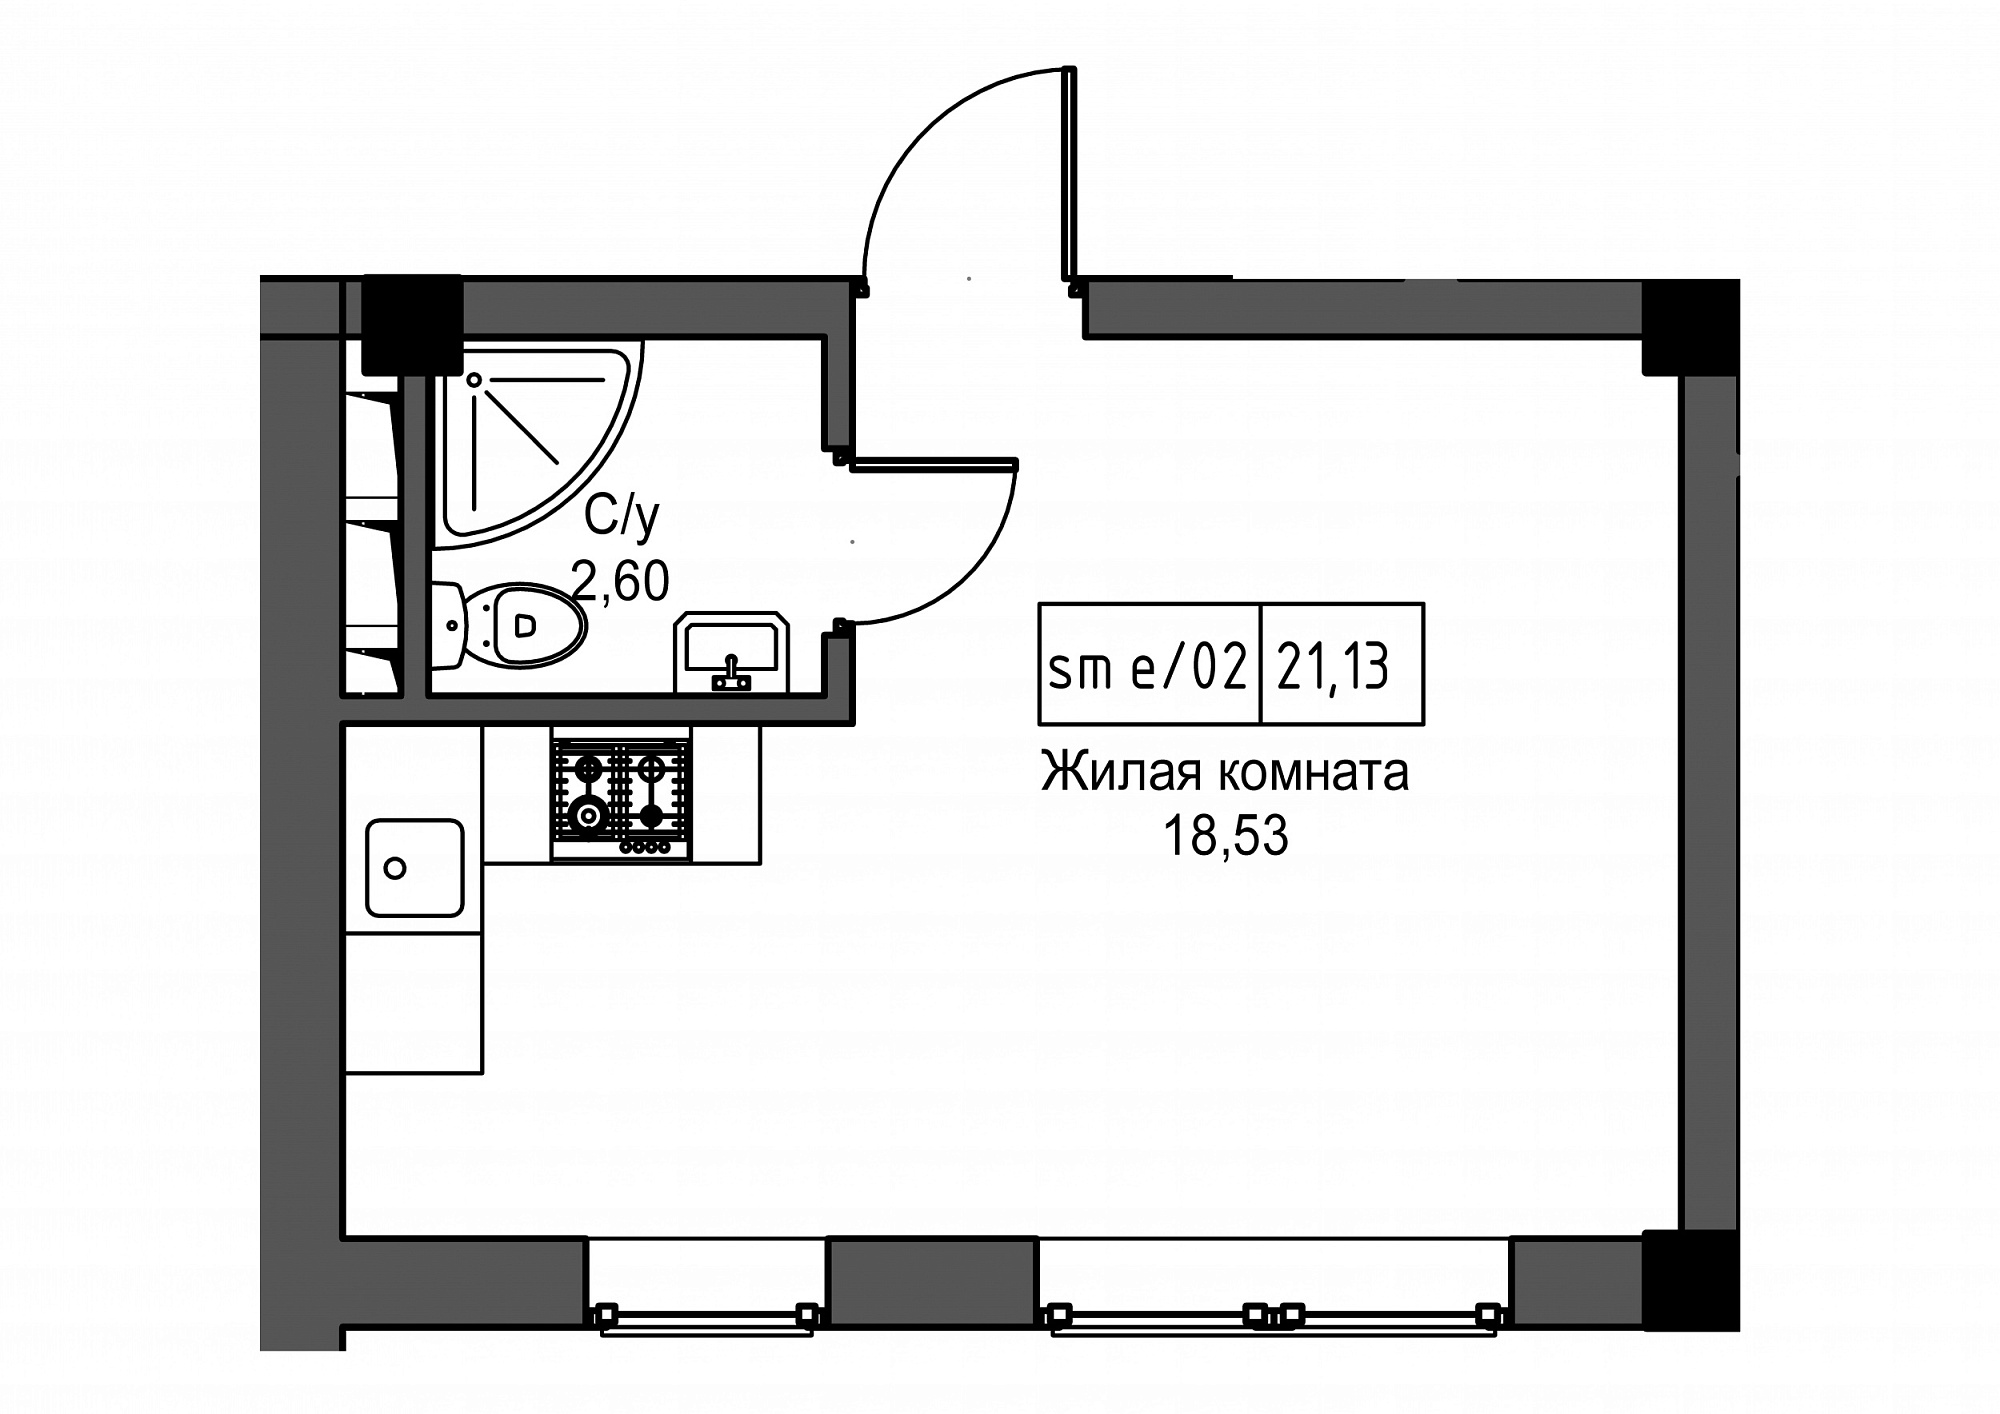 Планировка Smart-квартира площей 21.13м2, UM-002-02/0104.